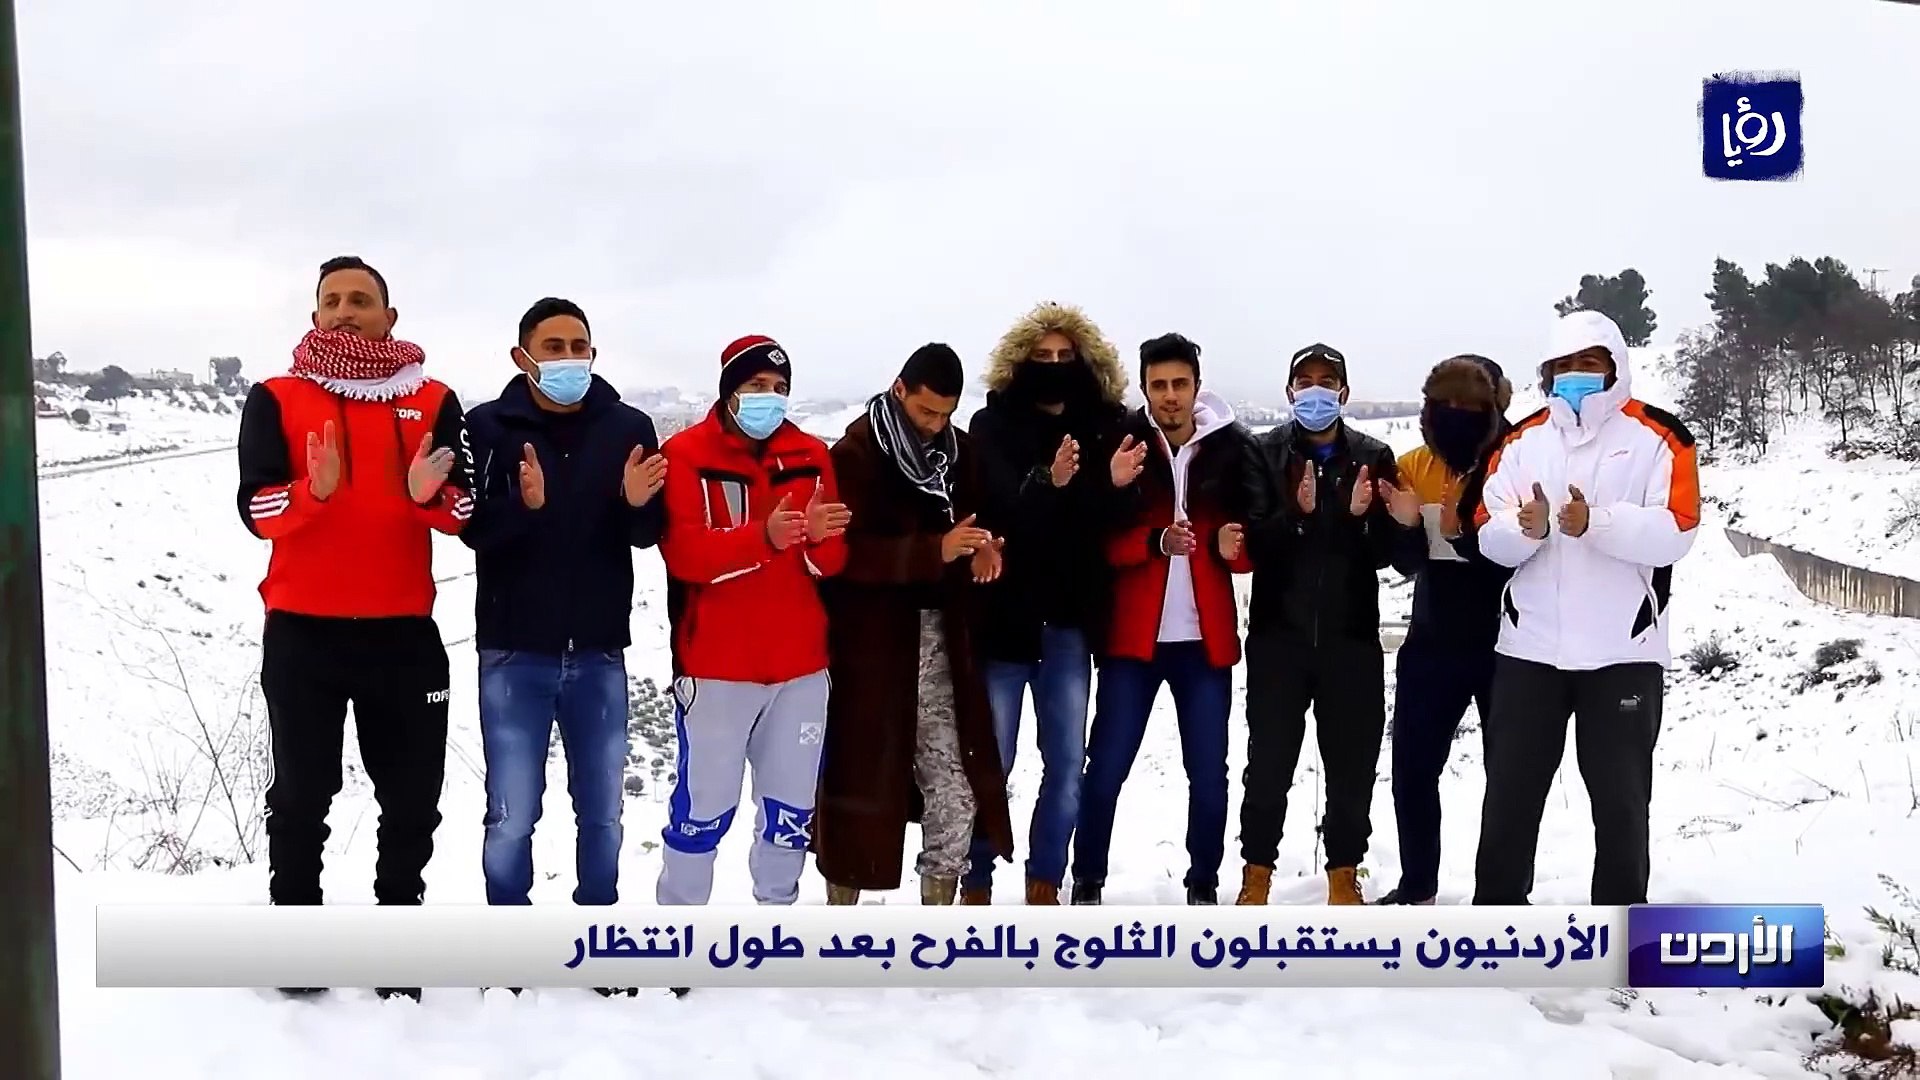 الأردنيون يستقبلون الثلوج بالفرح بعد طول انتظار - فيديو Dailymotion